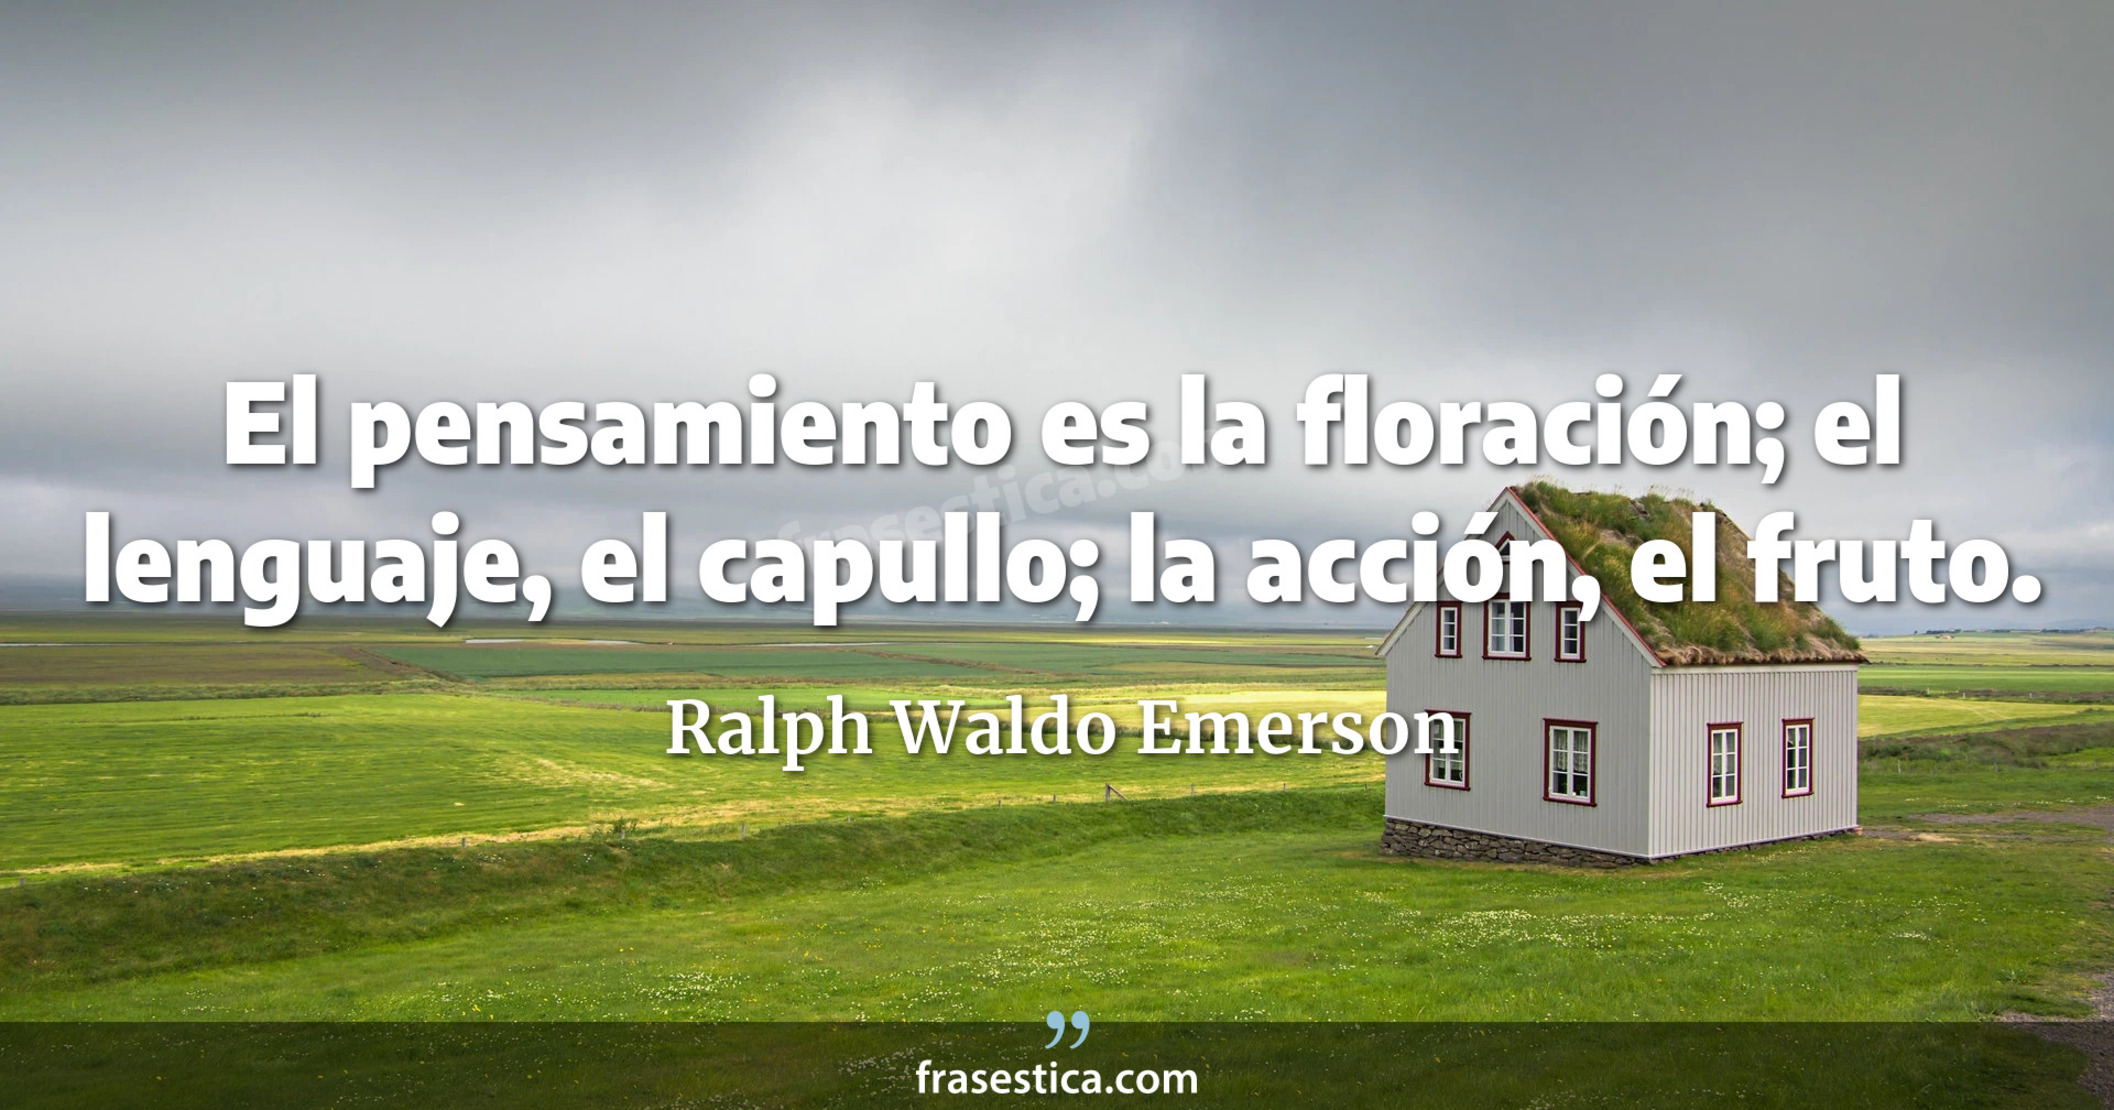 El pensamiento es la floración; el lenguaje, el capullo; la acción, el fruto. - Ralph Waldo Emerson